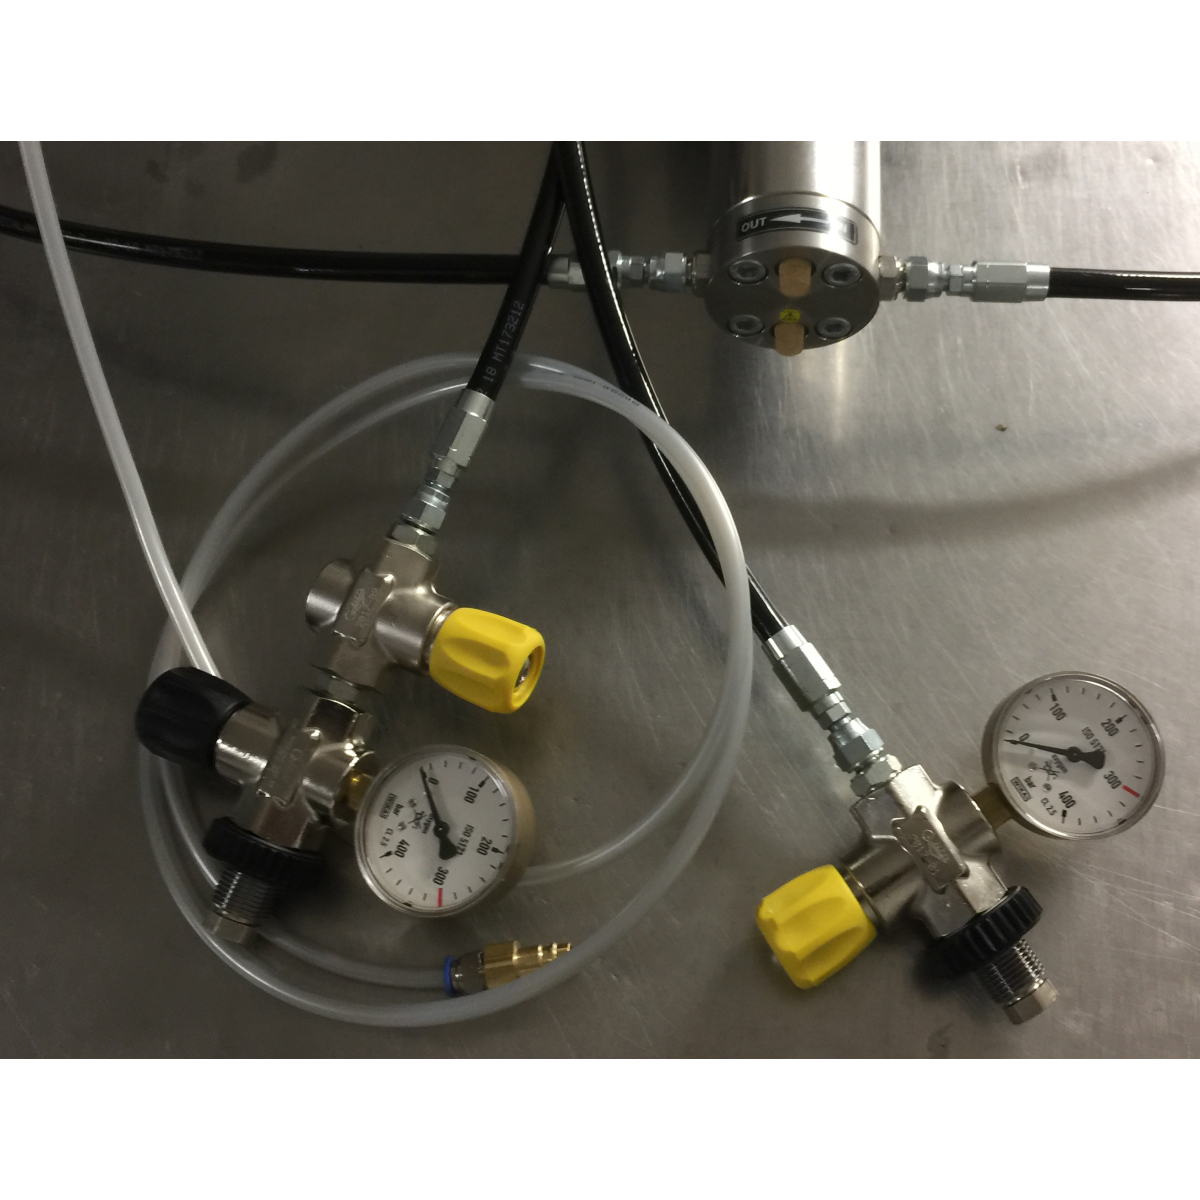 Schlauchset komplet für Sauerstoffbooster mit Analogmanometer bis 400b